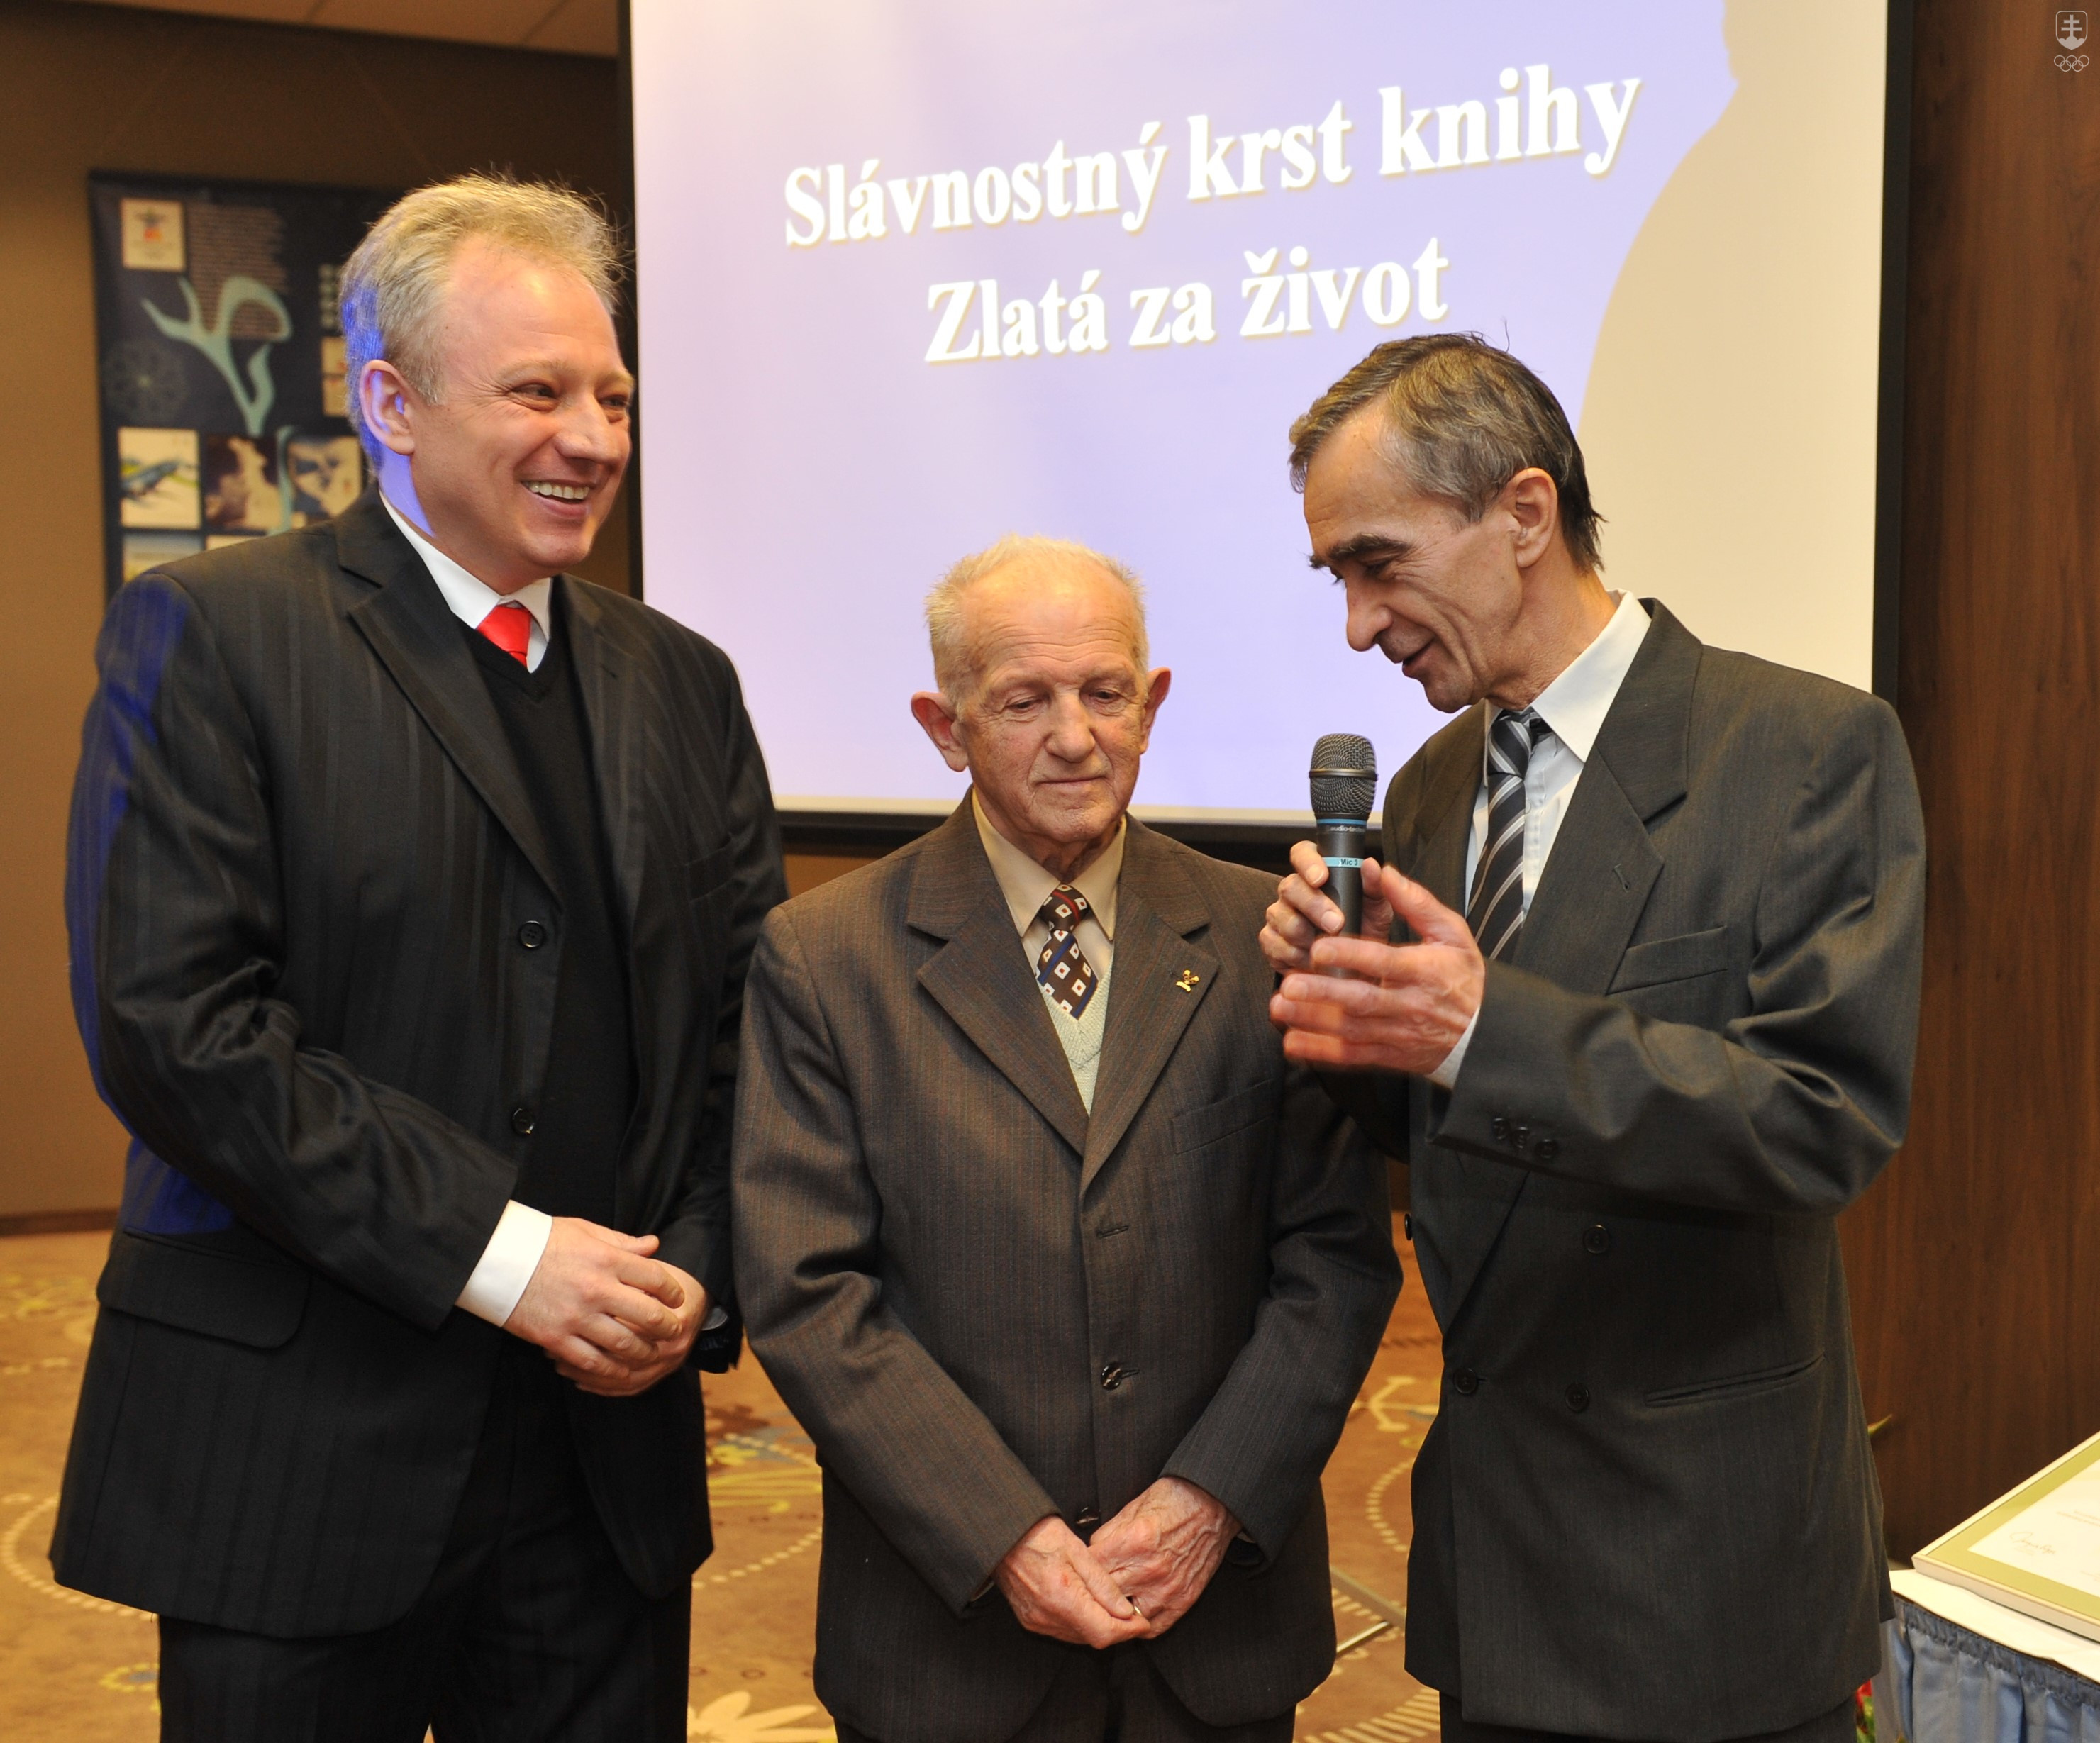 Na momentke z prezentácie knihy "Zlatá za život" o Jánovi Zacharovi v roku 2009 Marián Šimo s Jánom Zacharom, vľavo autor tejto spomienky na priateľa a vynikajúceho novinára Ľubomír Souček.